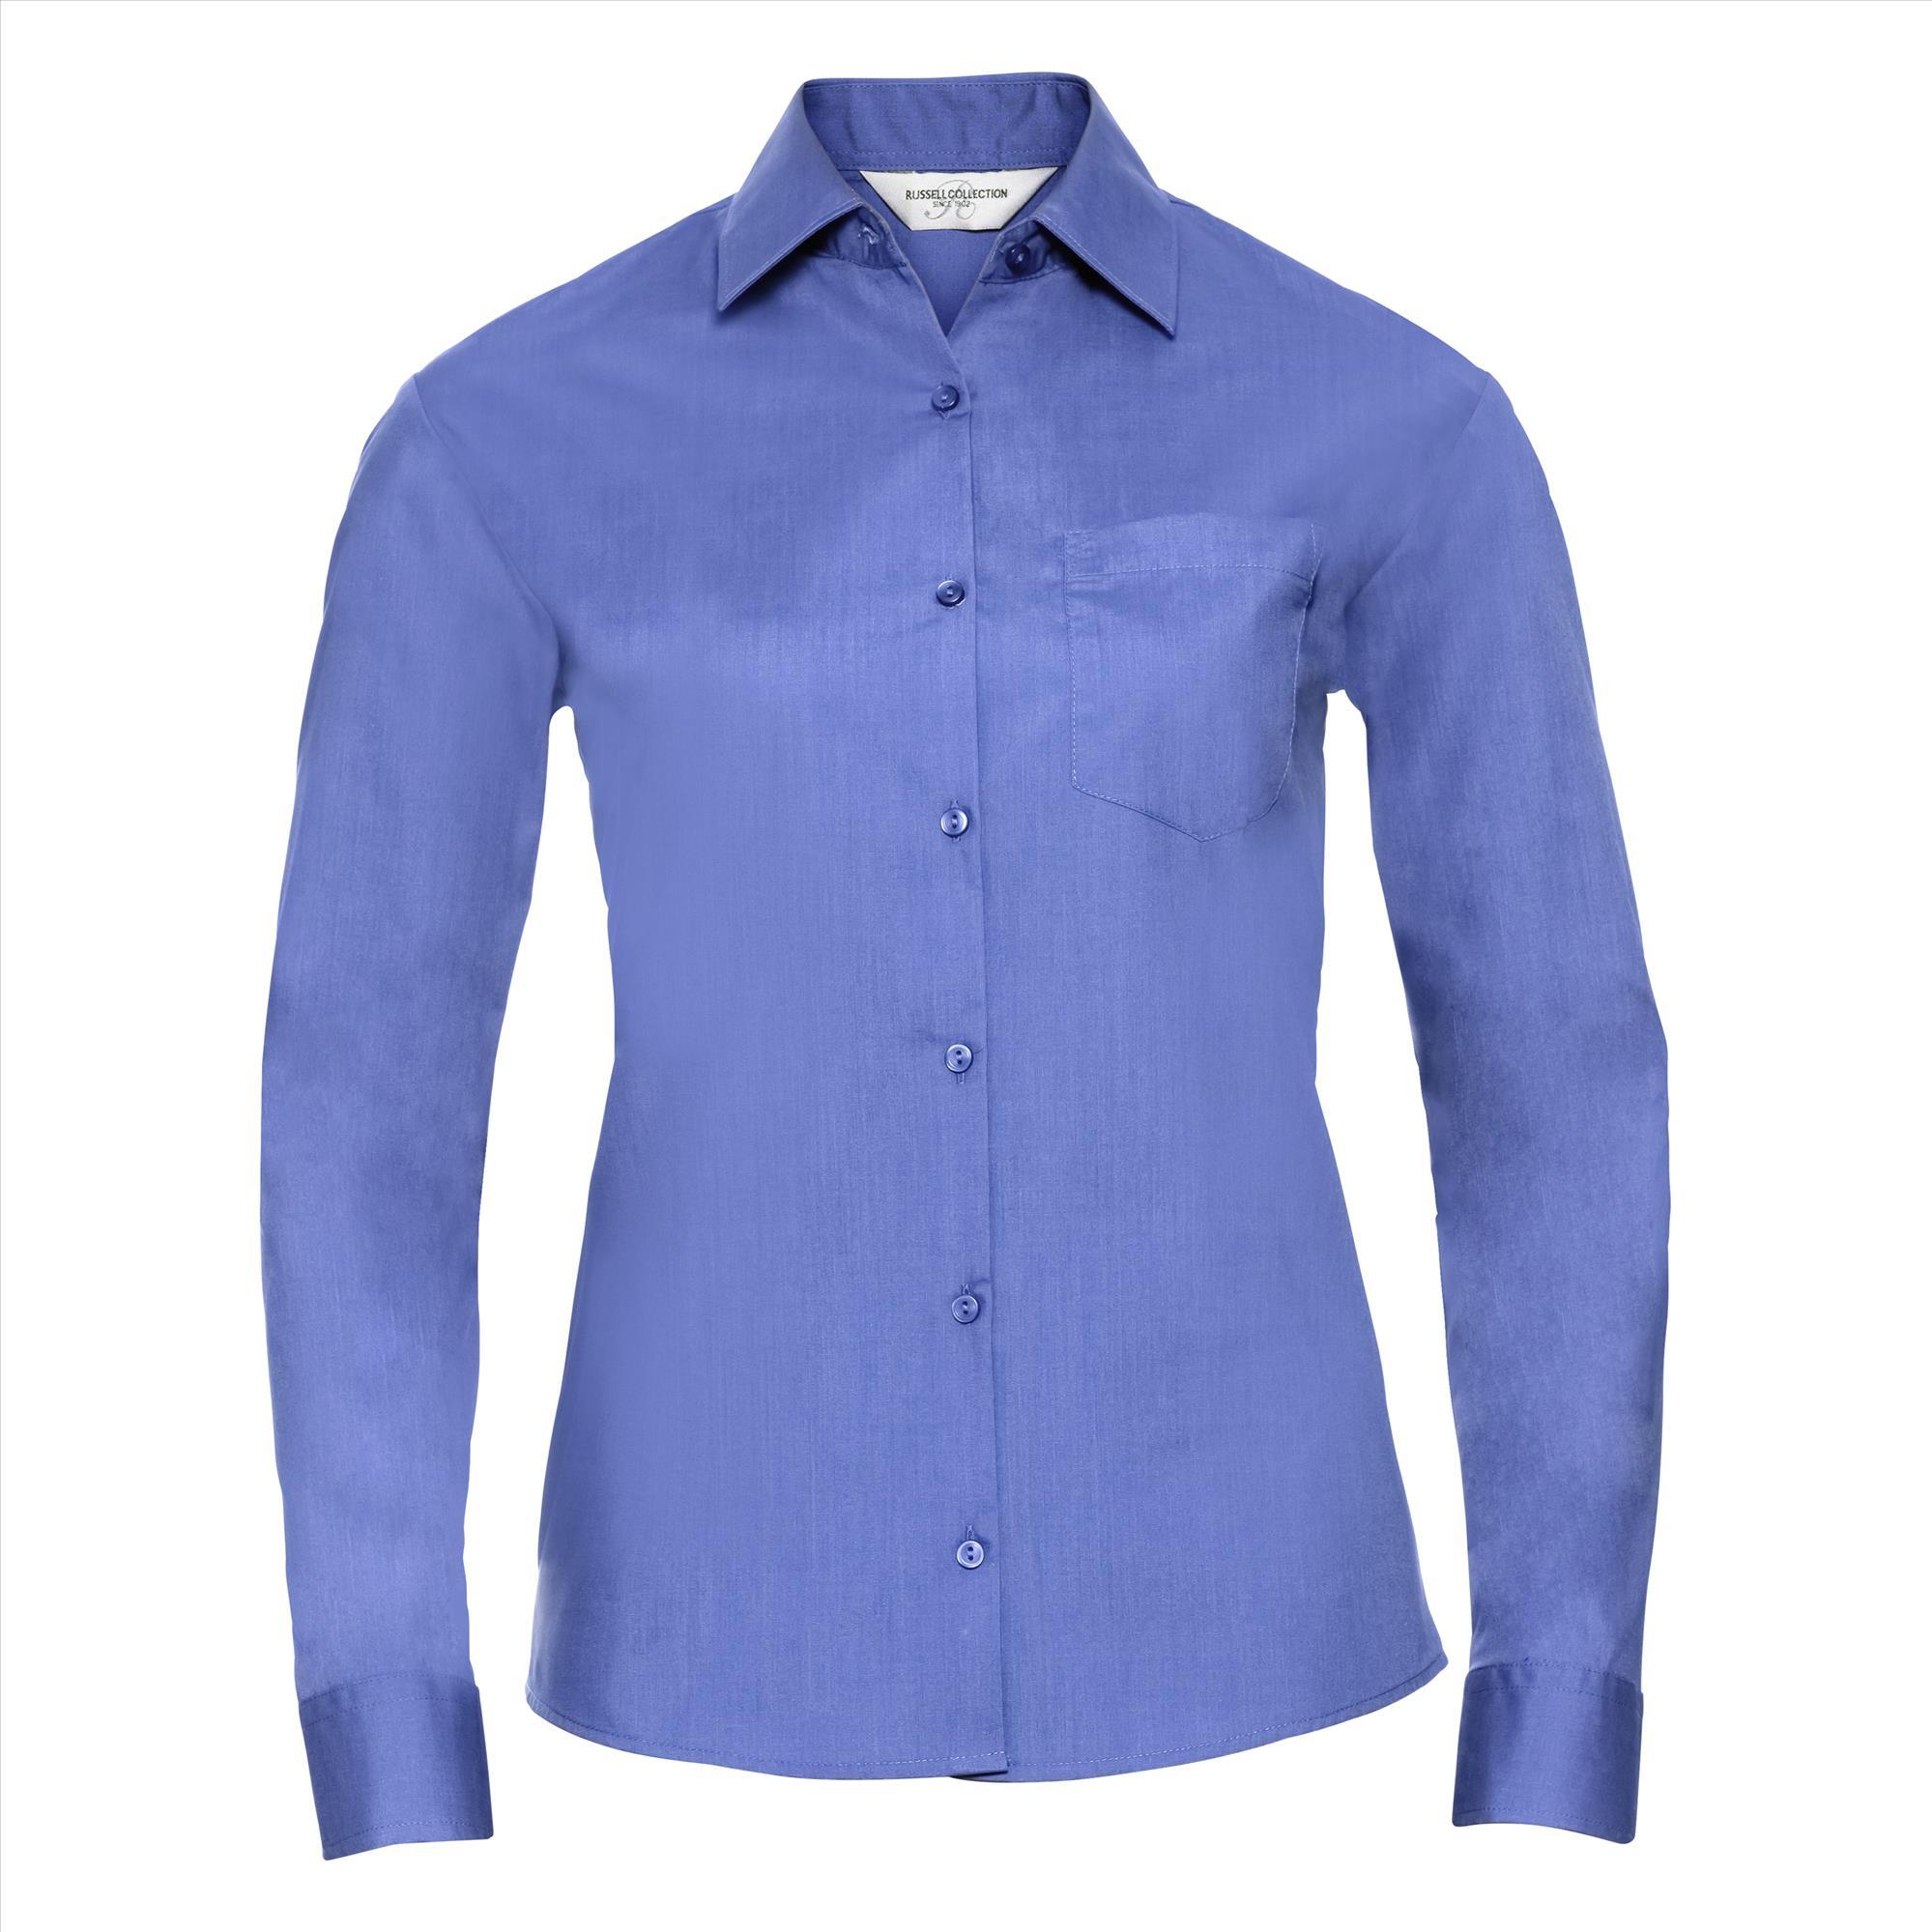 Dames blouse met klassieke kraag corporate blue perfect voor bedrukking bedrijfslogo